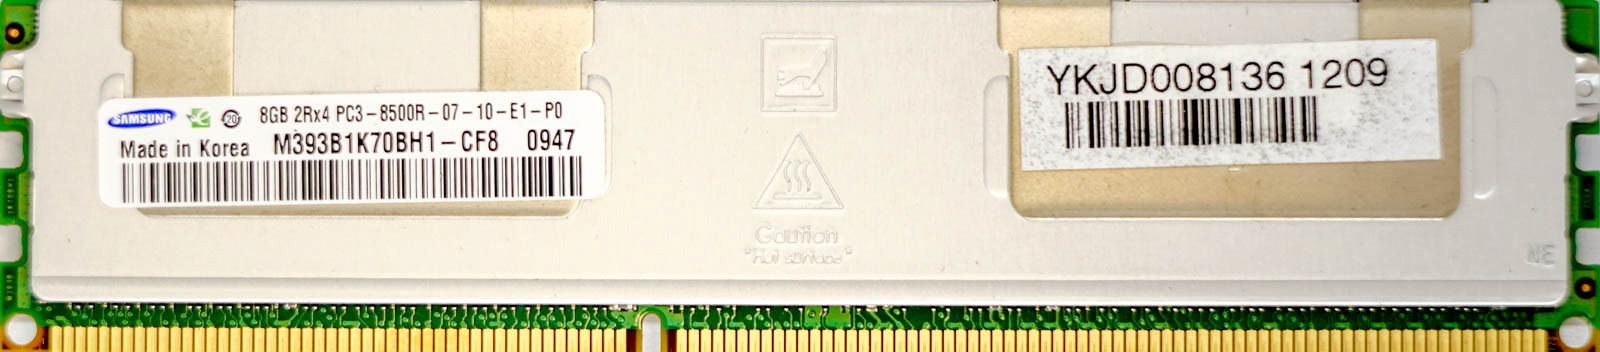 Samsung - 8GB PC3-8500R (DDR3-1066Mhz, 2RX4)